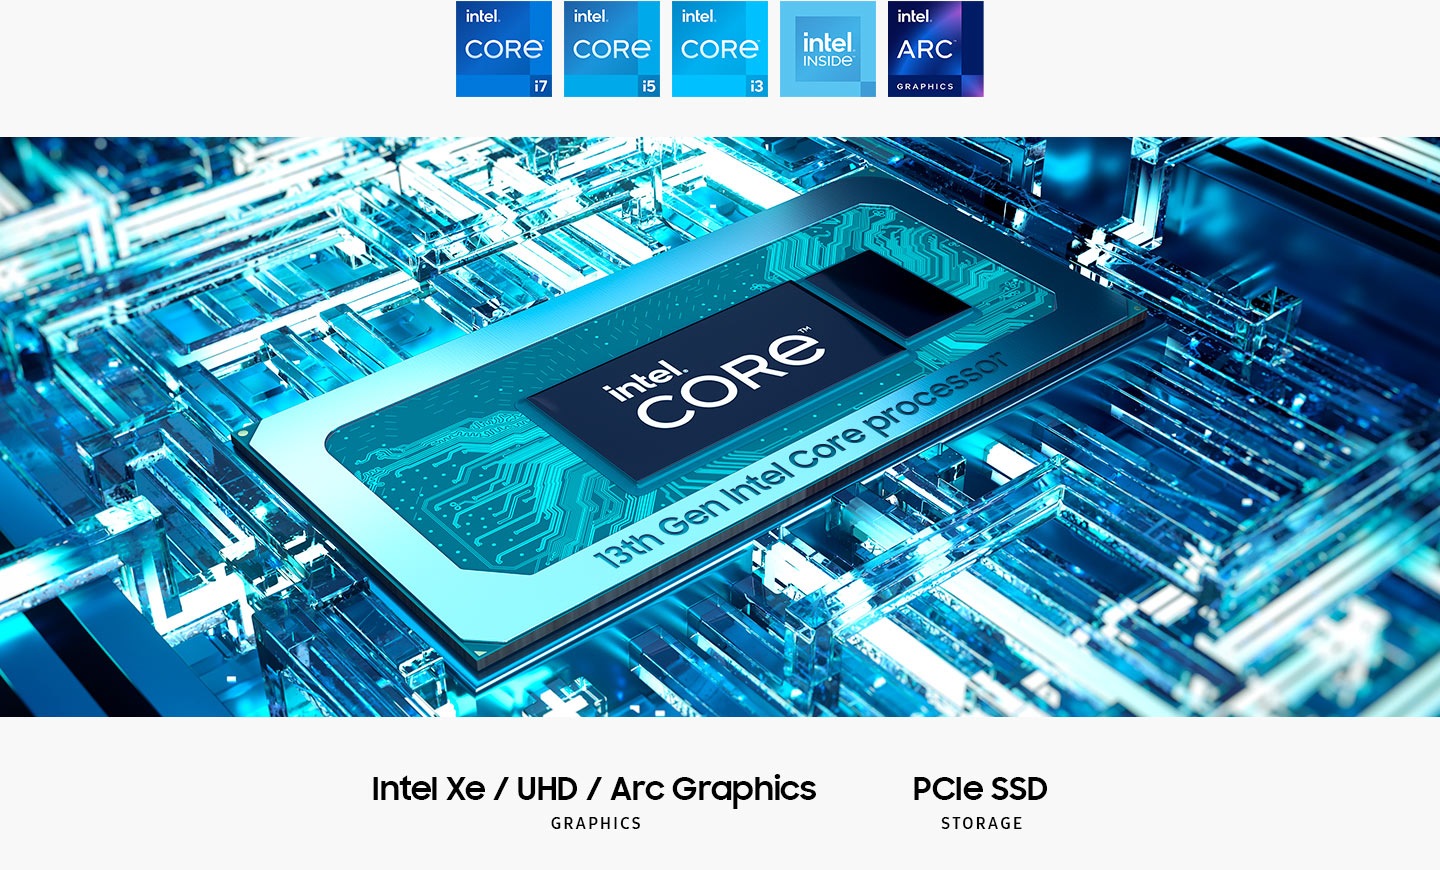 Prosesor Intel® Core ™ generasi ke -13 ada di motherboard dengan teks Intel® Core ™ di tengah. Grafik Intel Xe / Uhd / Arc. Penyimpanan SSD PCIe. Logo Intel Core i7, Intel Core i5, Intel Core i3, Intel Inside dan Intel Arc Graphics ditampilkan